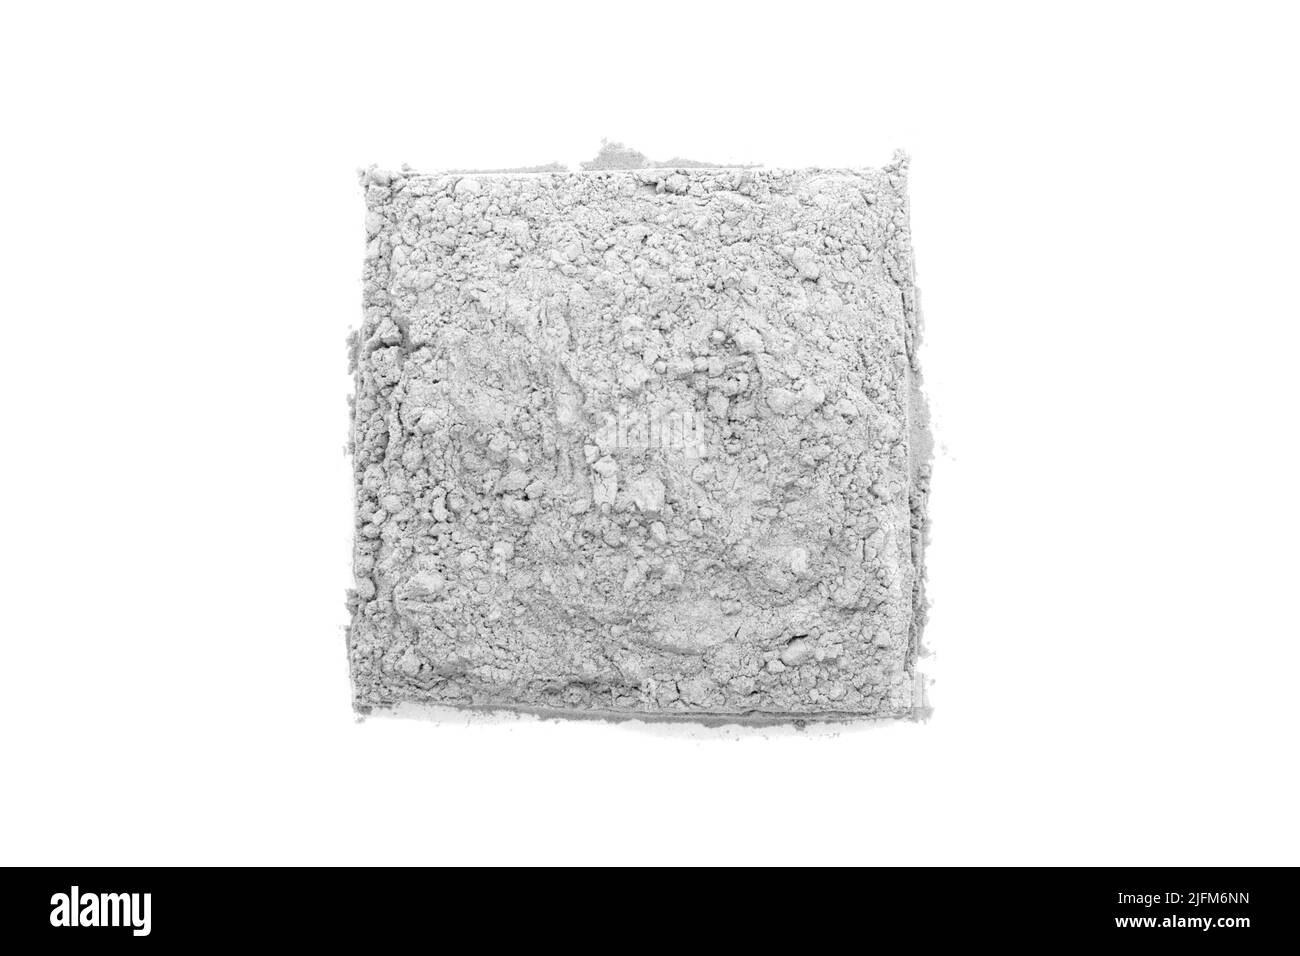 Cuadrada de polvo de arcilla blanca cosmética - vista superior Foto de stock